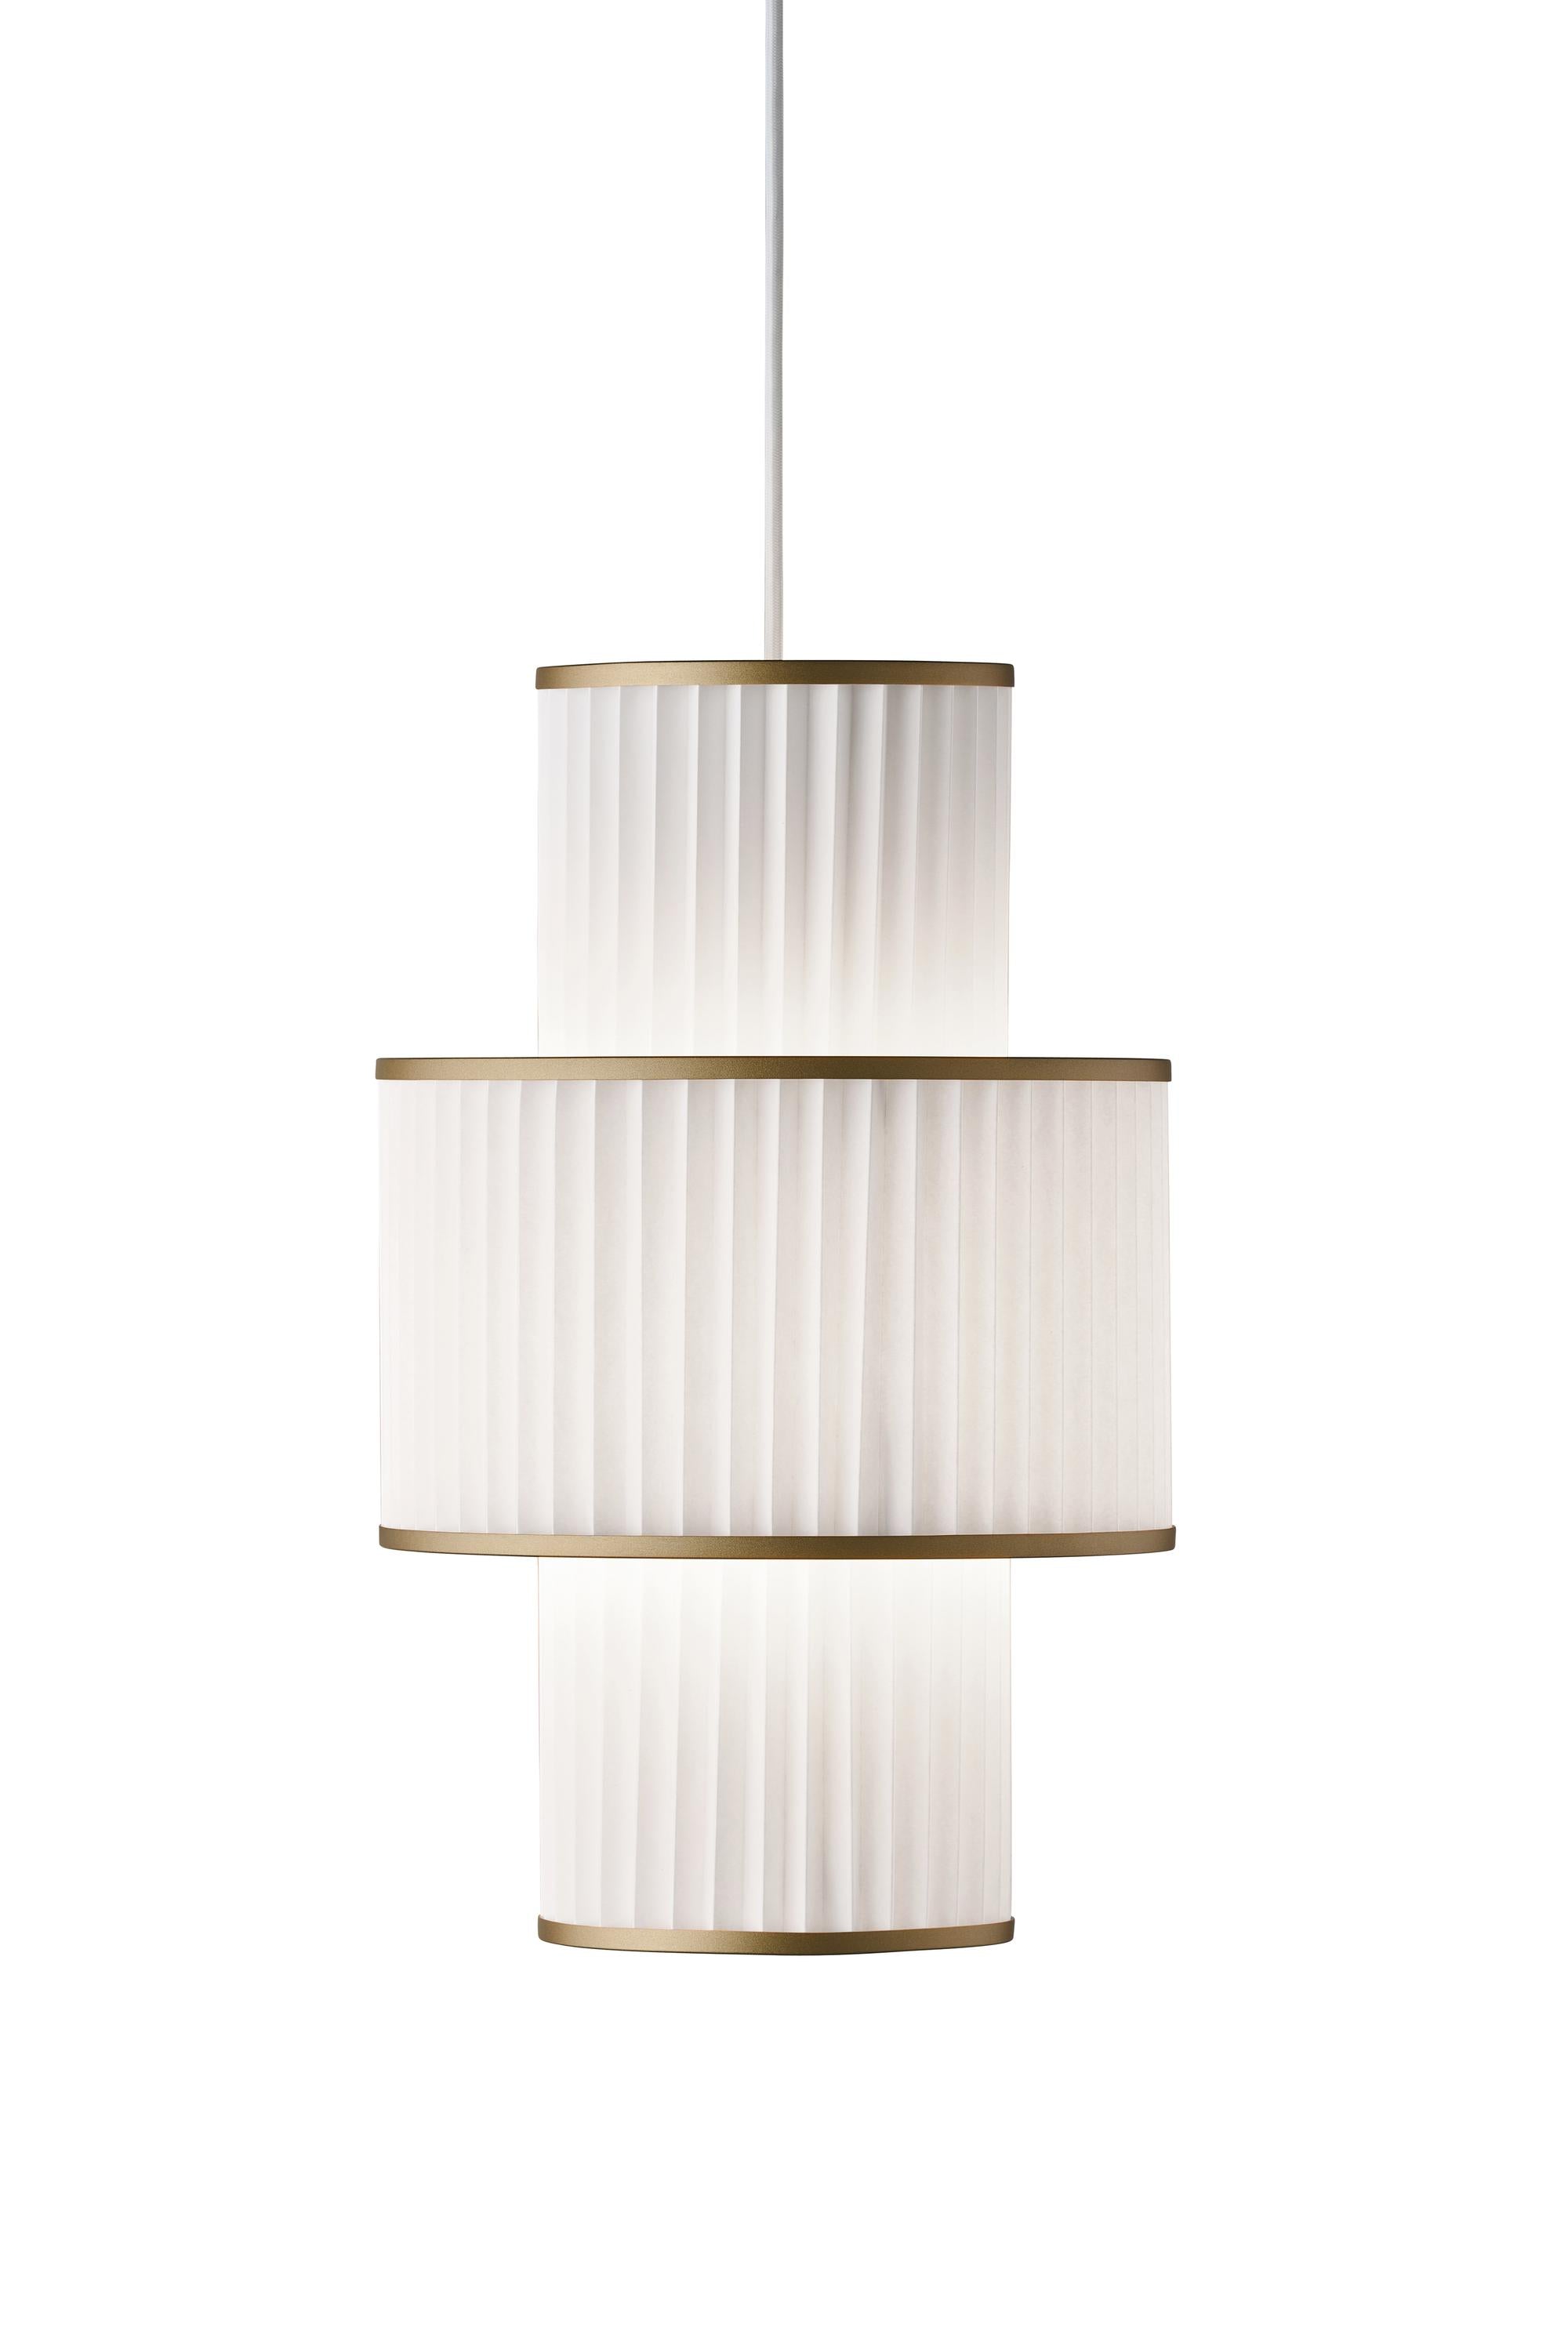 Le Klint Plivello Suspension Lamp Golden/White med 3 nyanser (S M S)